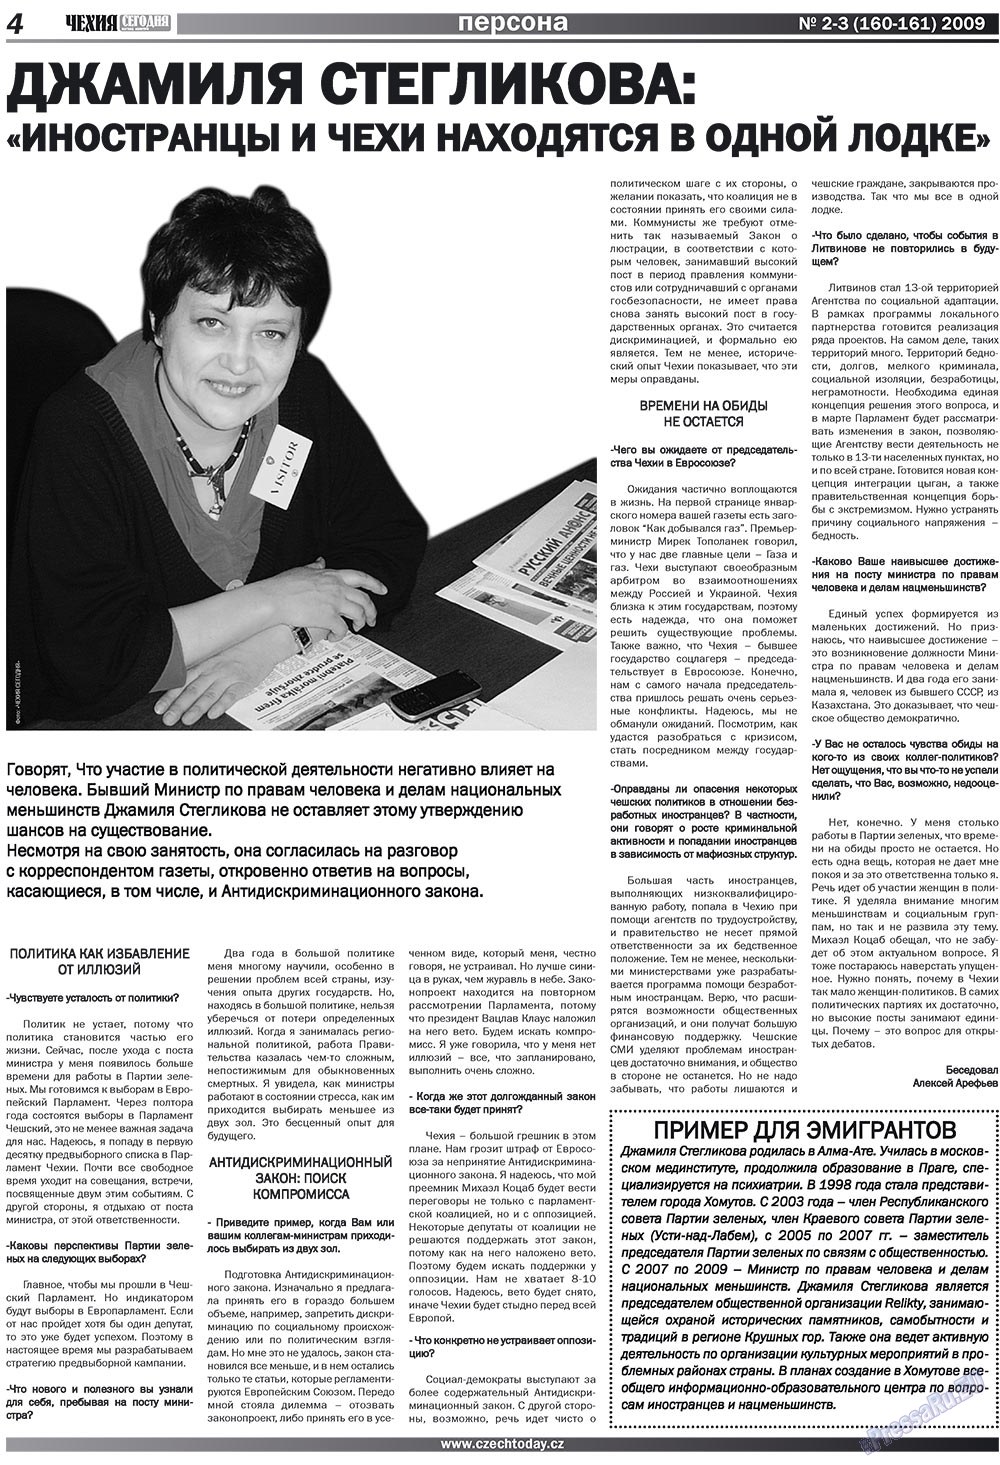 Чехия сегодня (журнал). 2009 год, номер 2, стр. 4